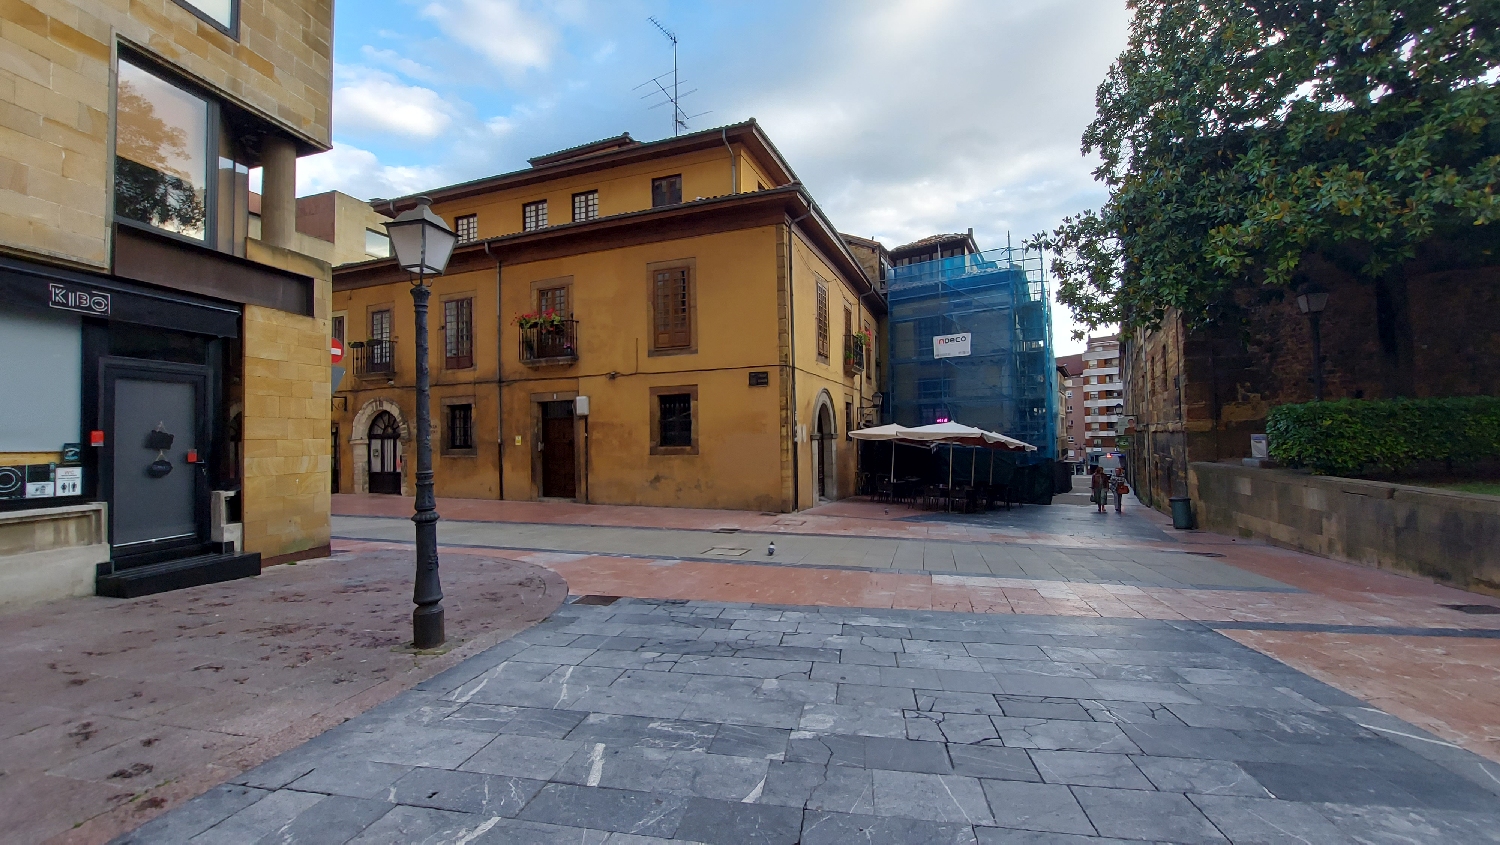 Camino Primitivo, Oviedo, az első szakasz a katedrális felől, a sárga háznál kell balra fordulni